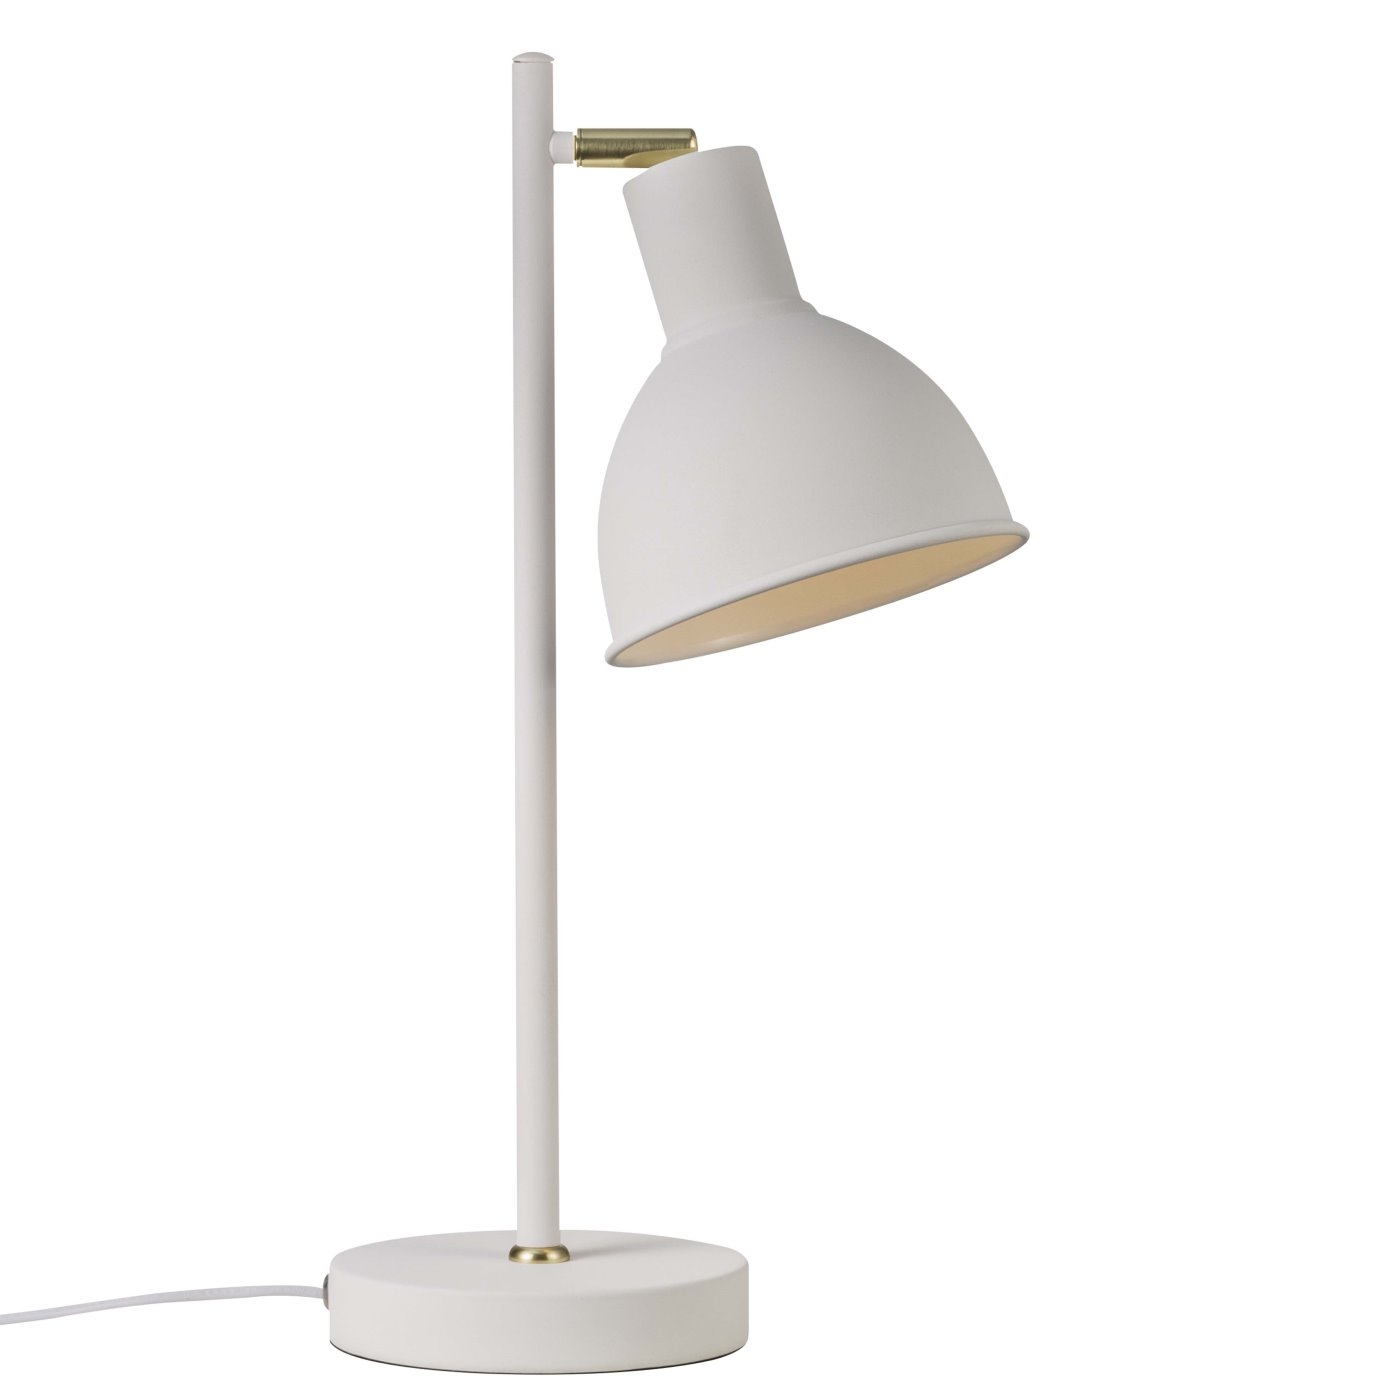 Tischlampe weiss Rau Nordlux Pop Ru Metall Schirm mit E27 Fassung unter Tischleuchten > Wohnraumleuchten > Beleuchtung